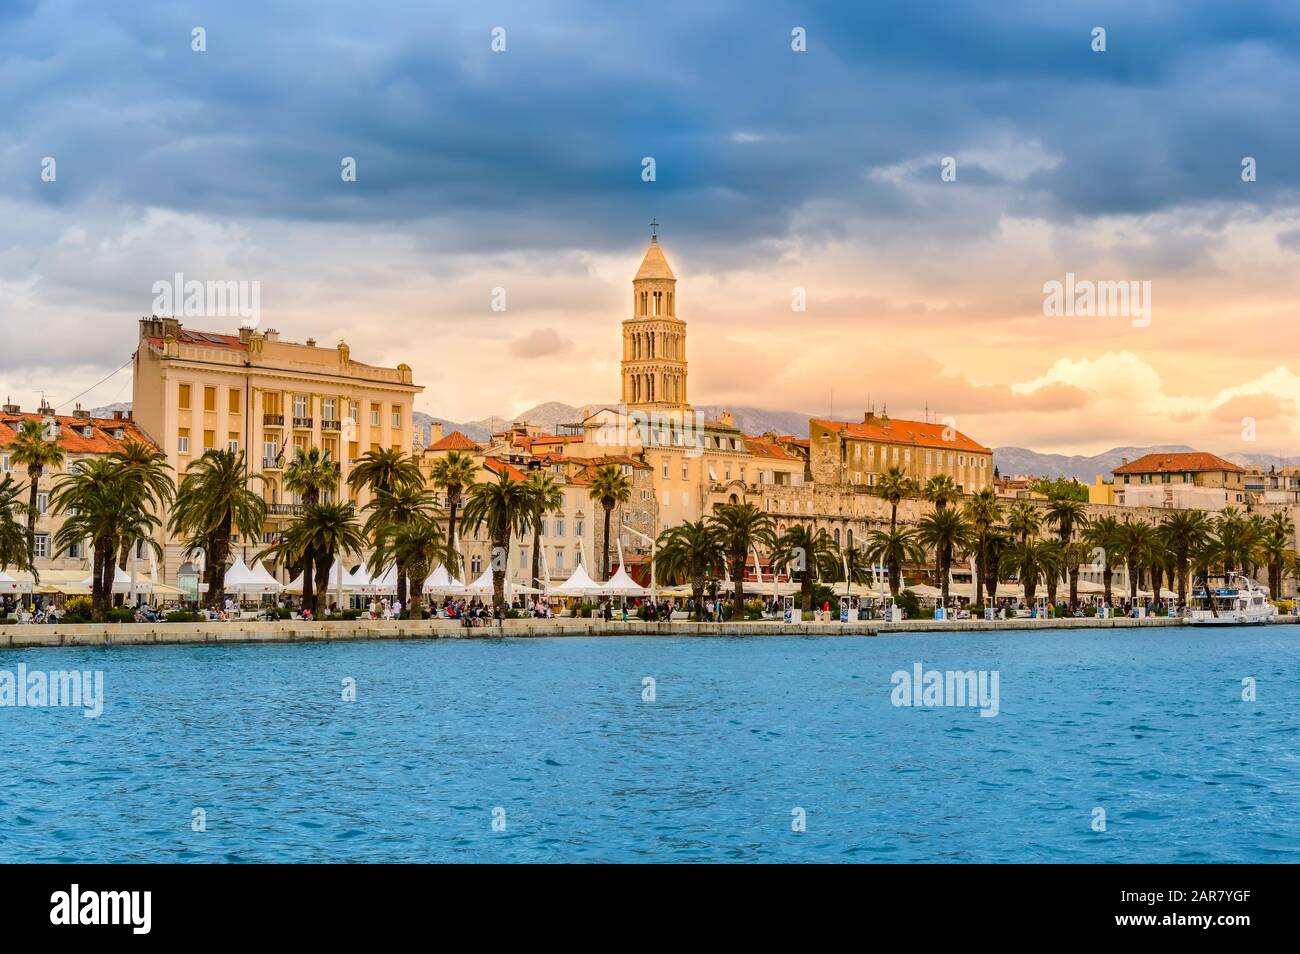 Split, Croatie - 21 mai 2019: Diviser la vieille ville avec la cathédrale Saint Domnius, bâtiments colorés, Riva Promenade et palmiers. Vive plage de evenin Banque D'Images